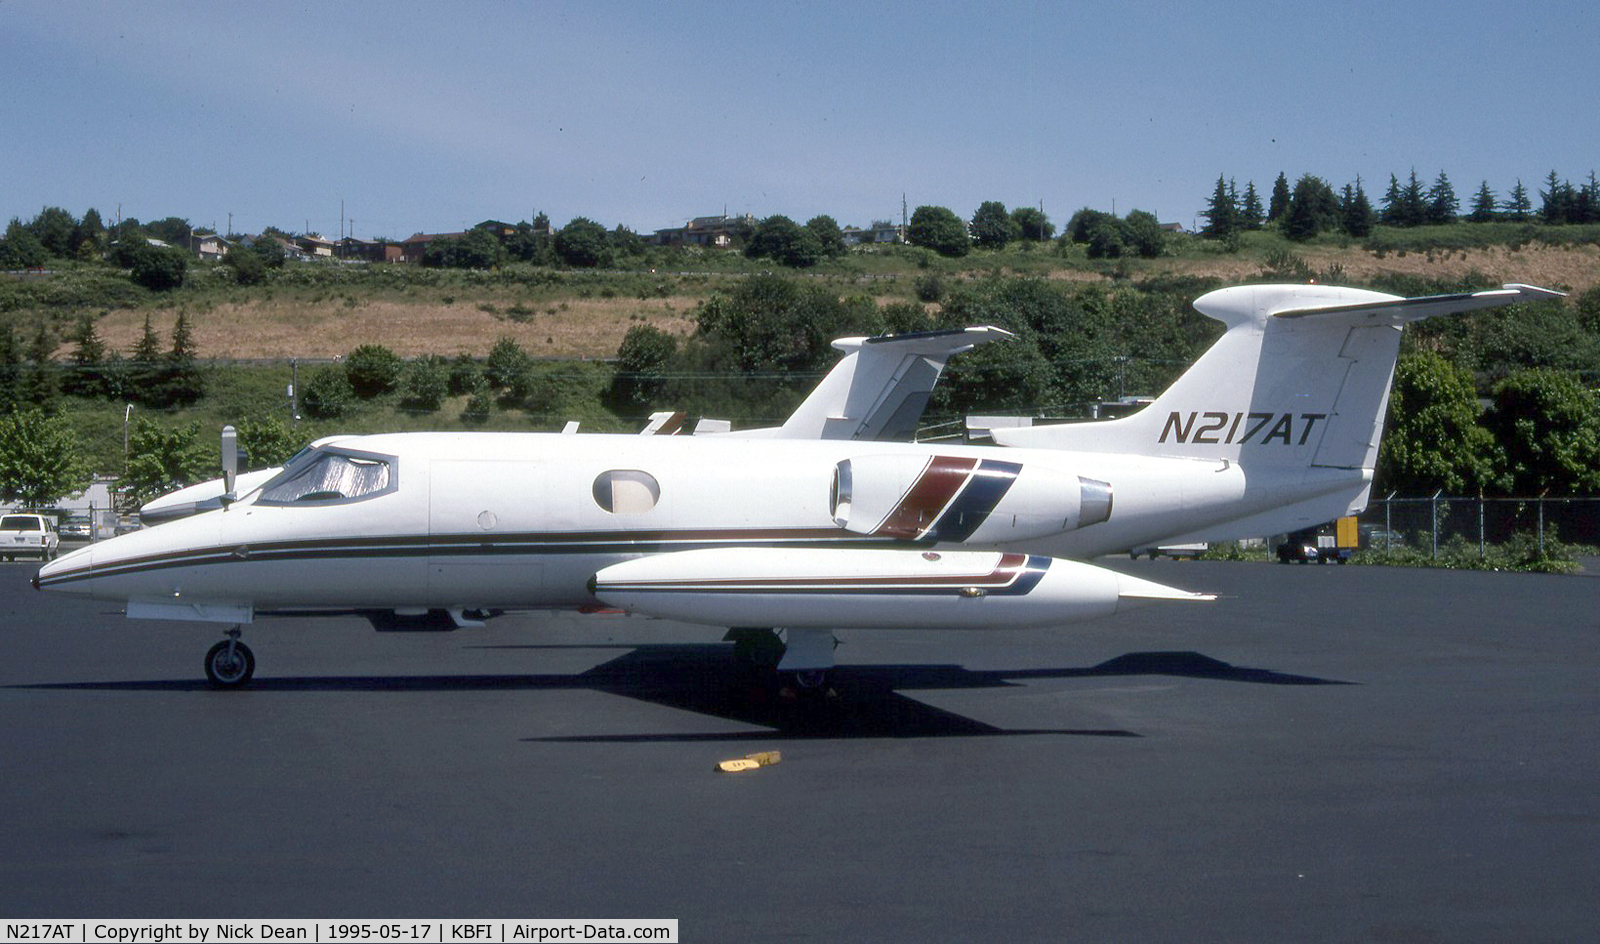 N217AT, 1969 Learjet 24B C/N 24B-217, KBFI